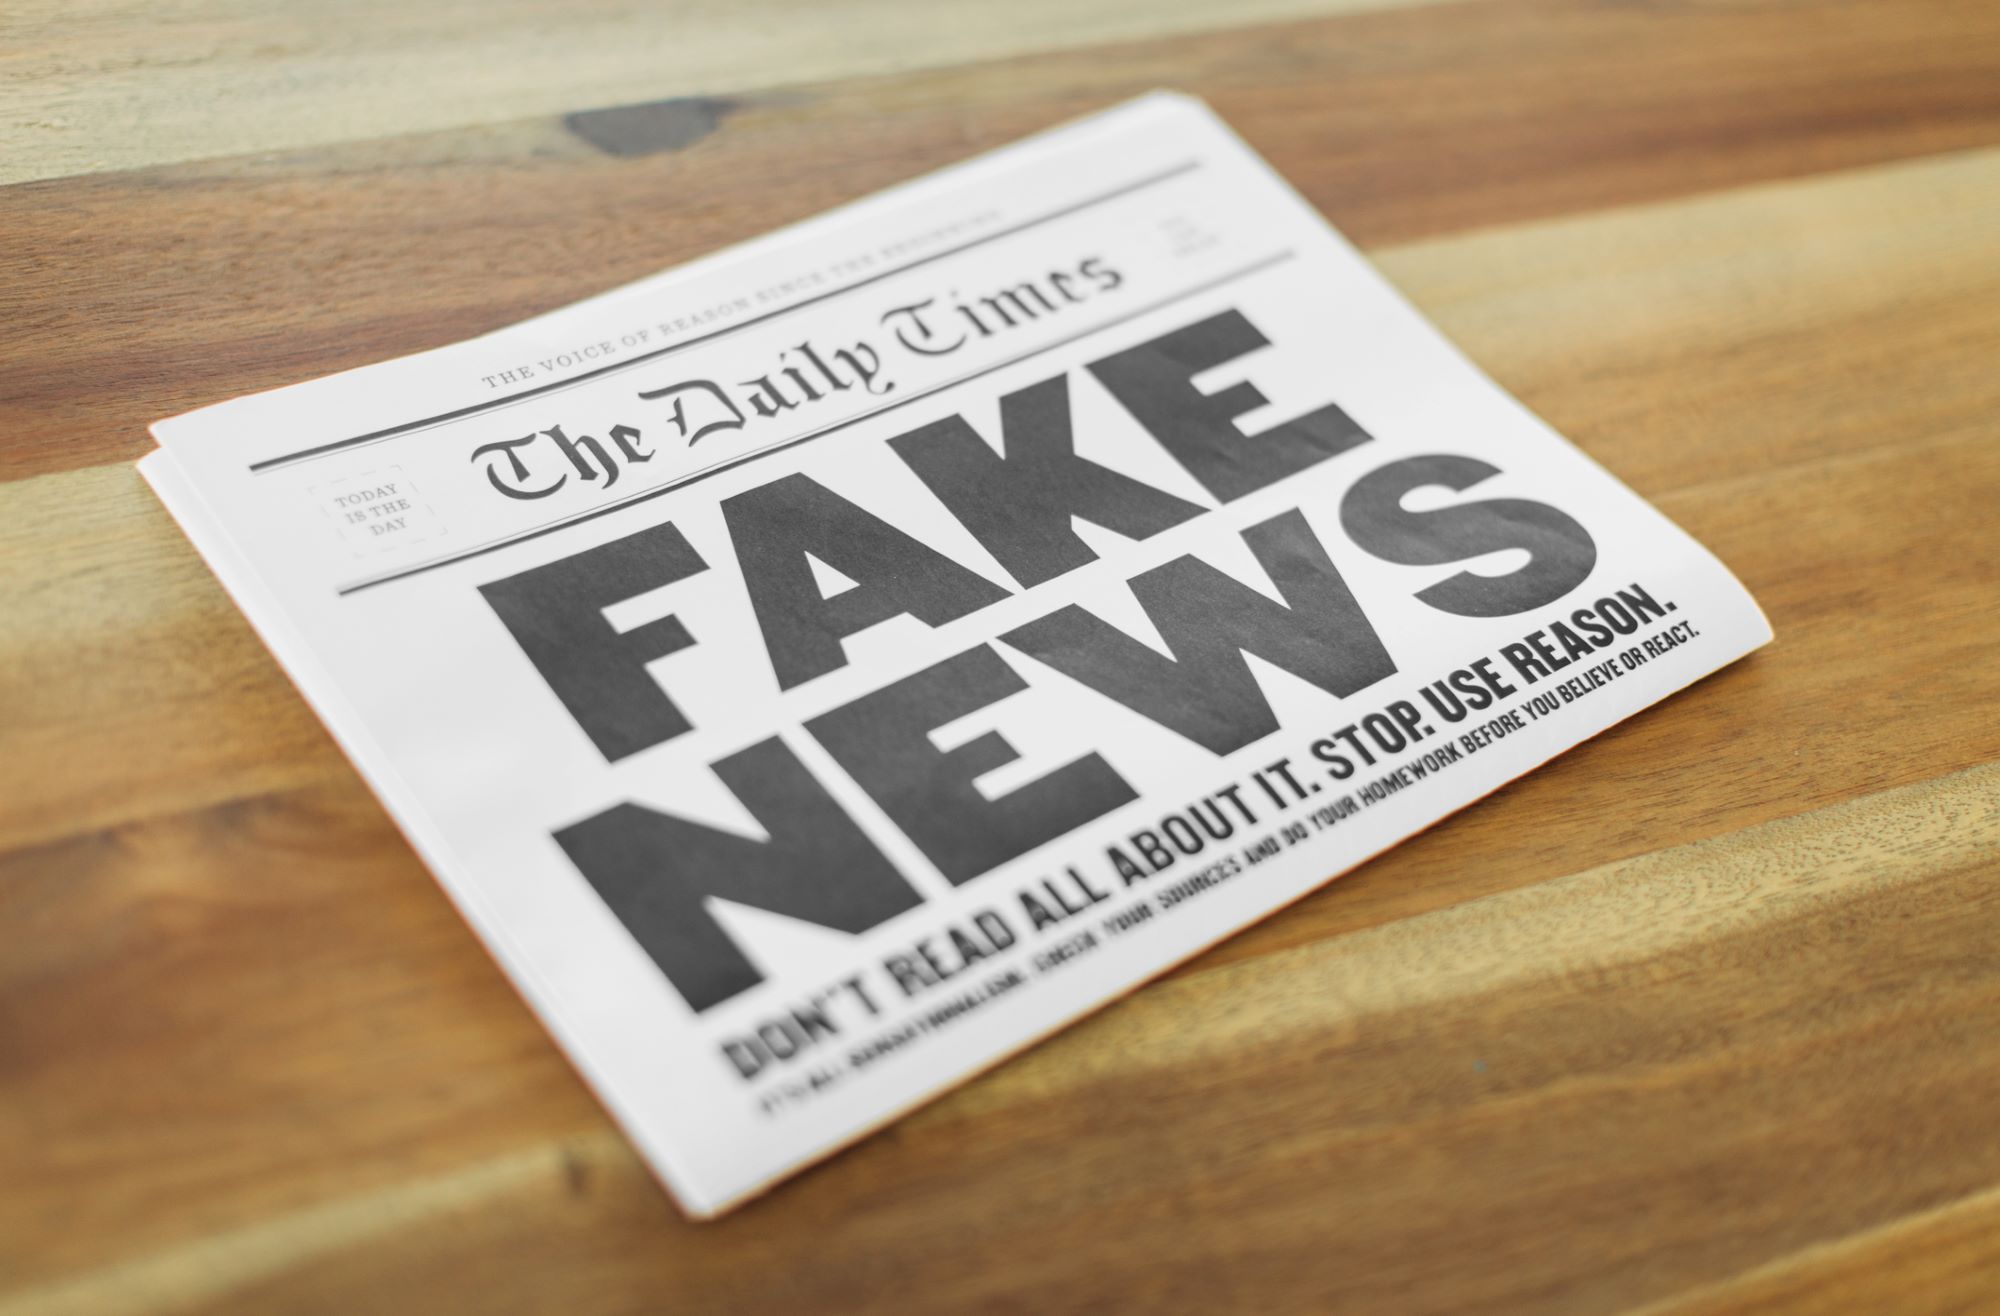 Fake newsy. Jak oddzielić prawdę od fałszu?